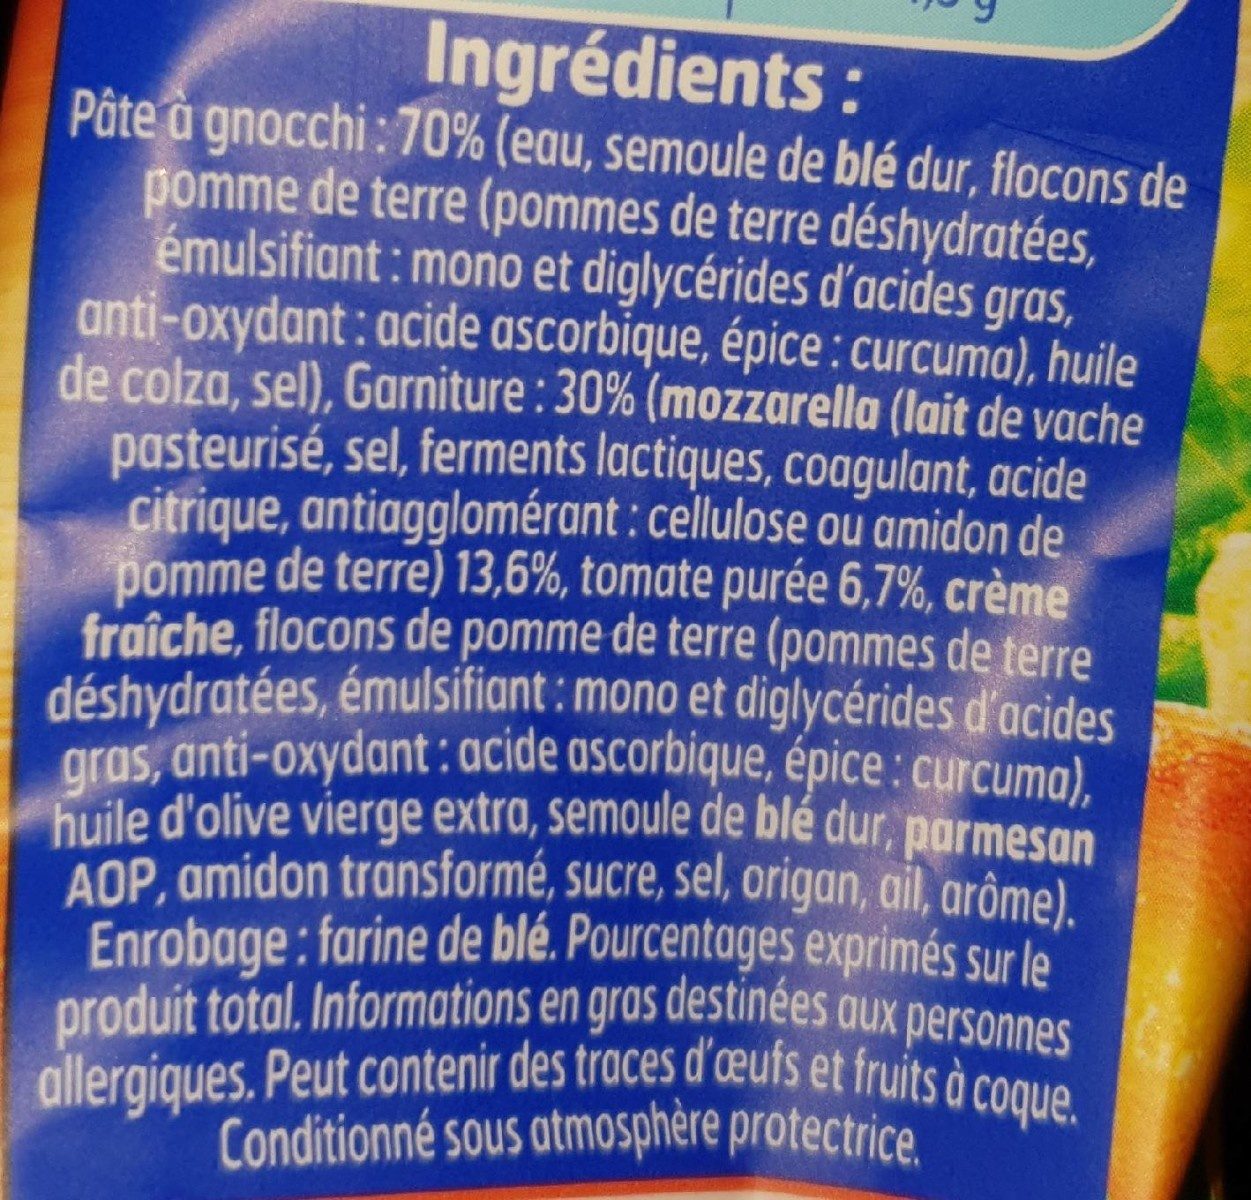 Gnocchi à poêler extra mozzarella/tomate - Ingrédients